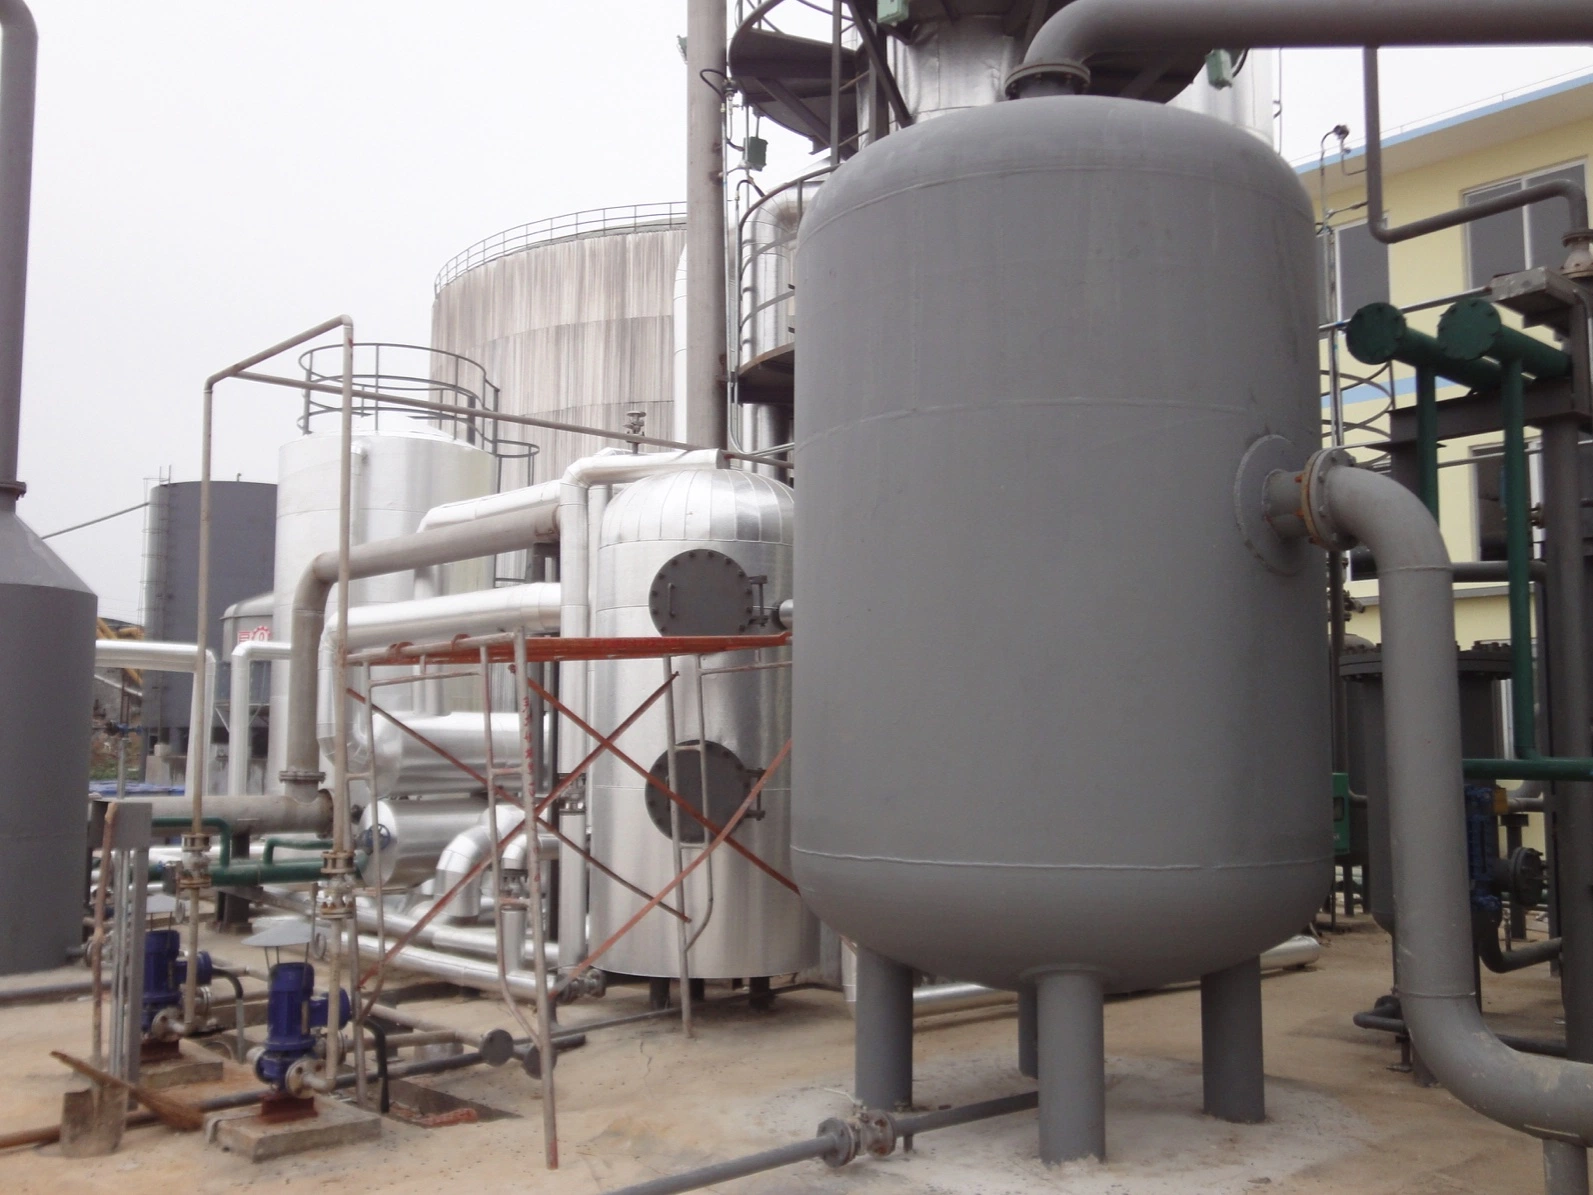 إزالة التبريؤ من الغاز الحيوي الامتزاز الكيميائي ترقية النظام إلى الغاز الطبيعي (CNG)